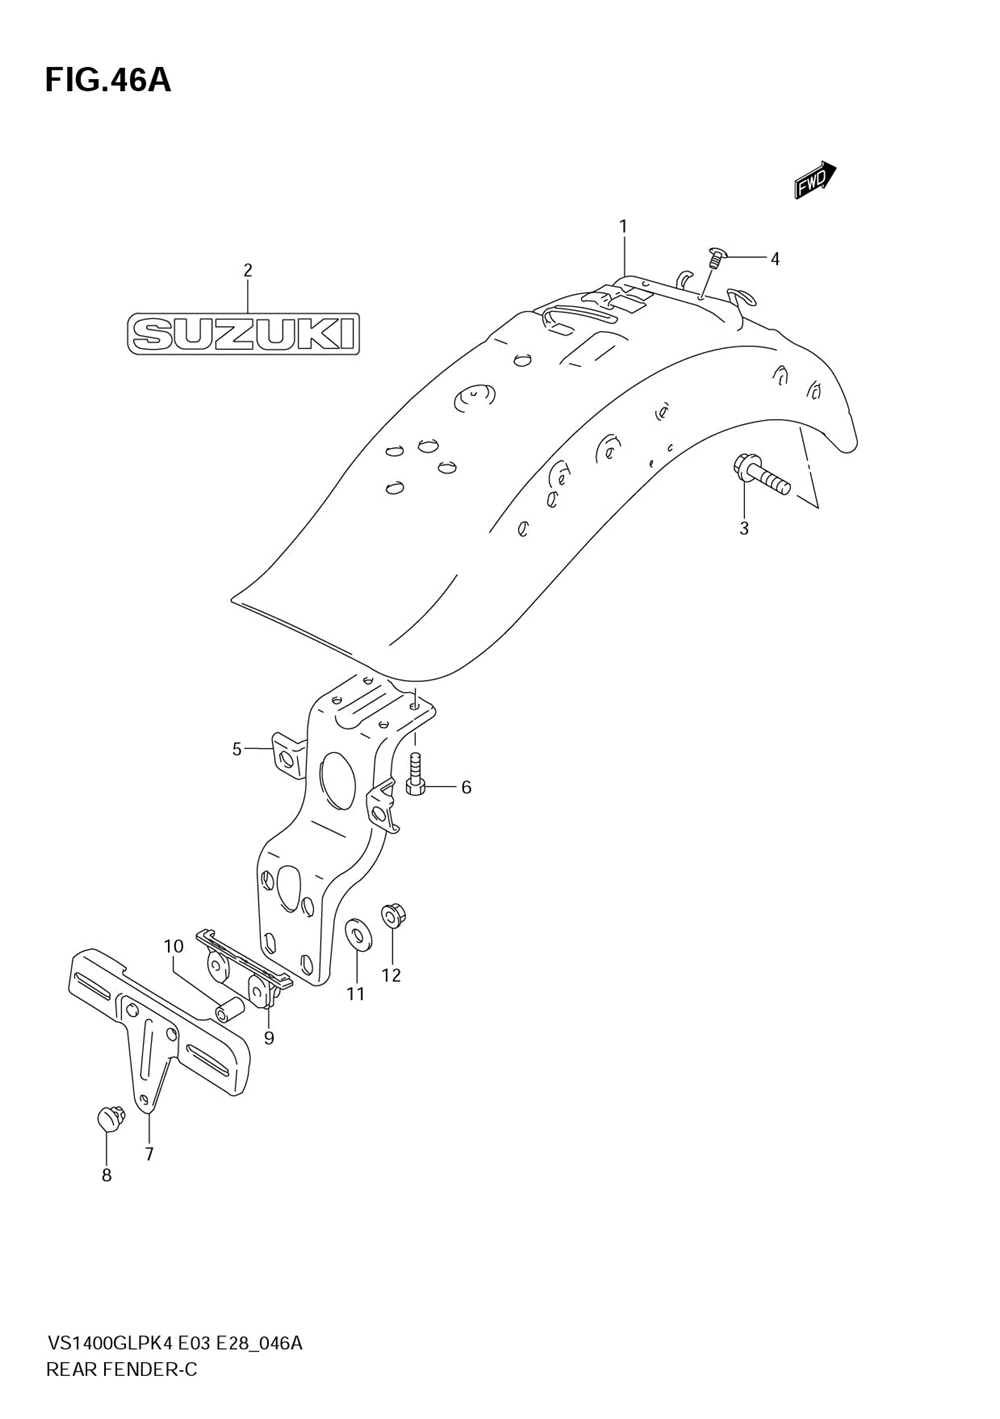 Rear fender (model k5_k6_k7_k8)